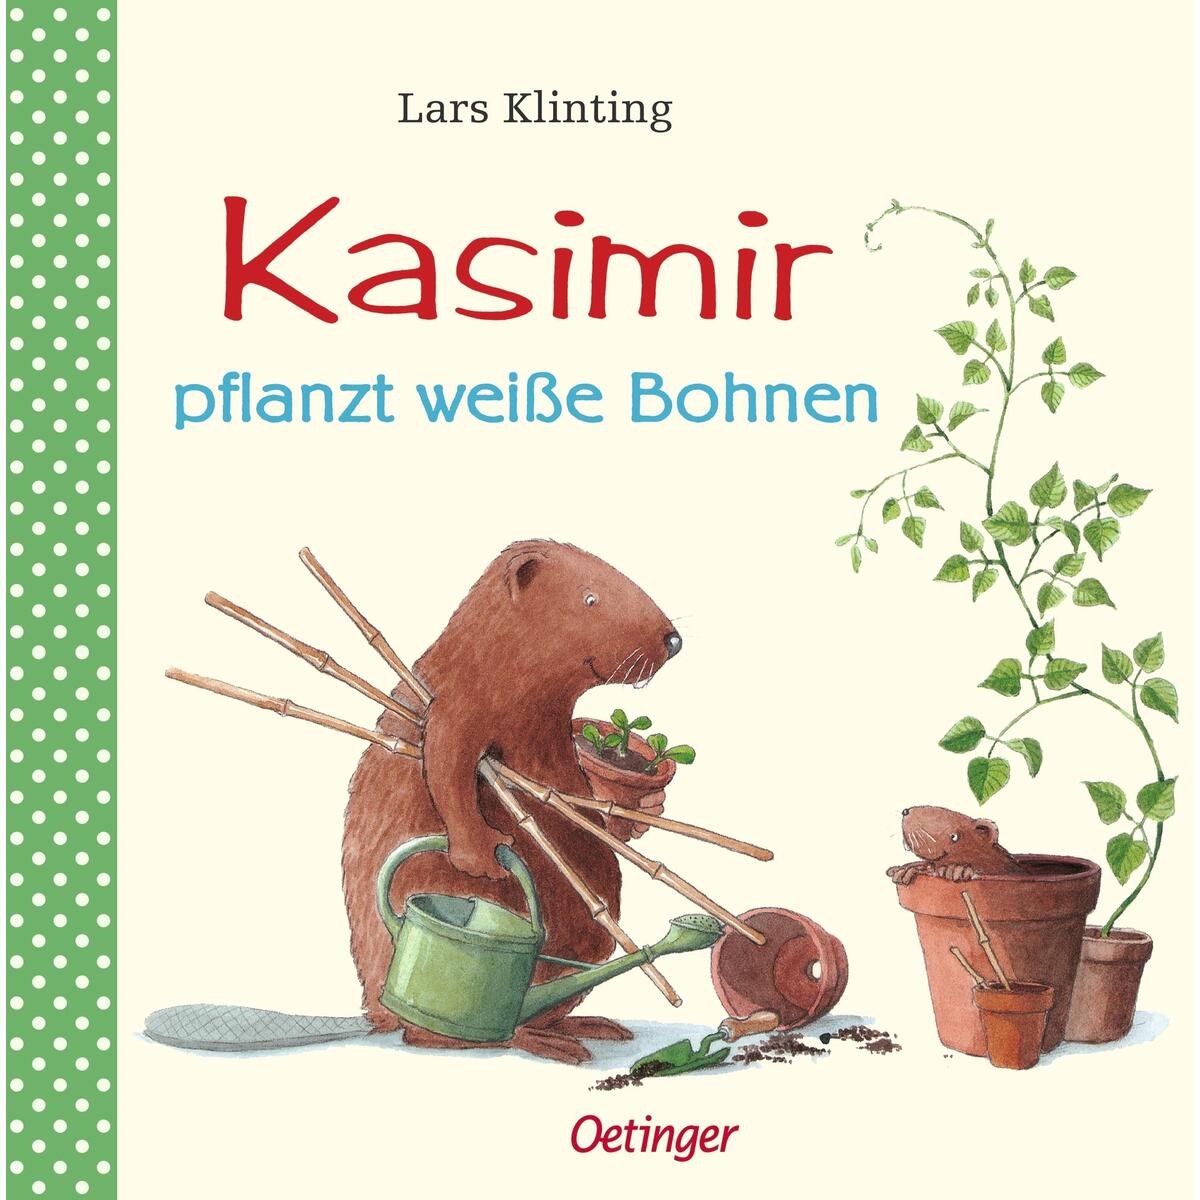 Kasimir pflanzt weiße Bohnen von Oetinger